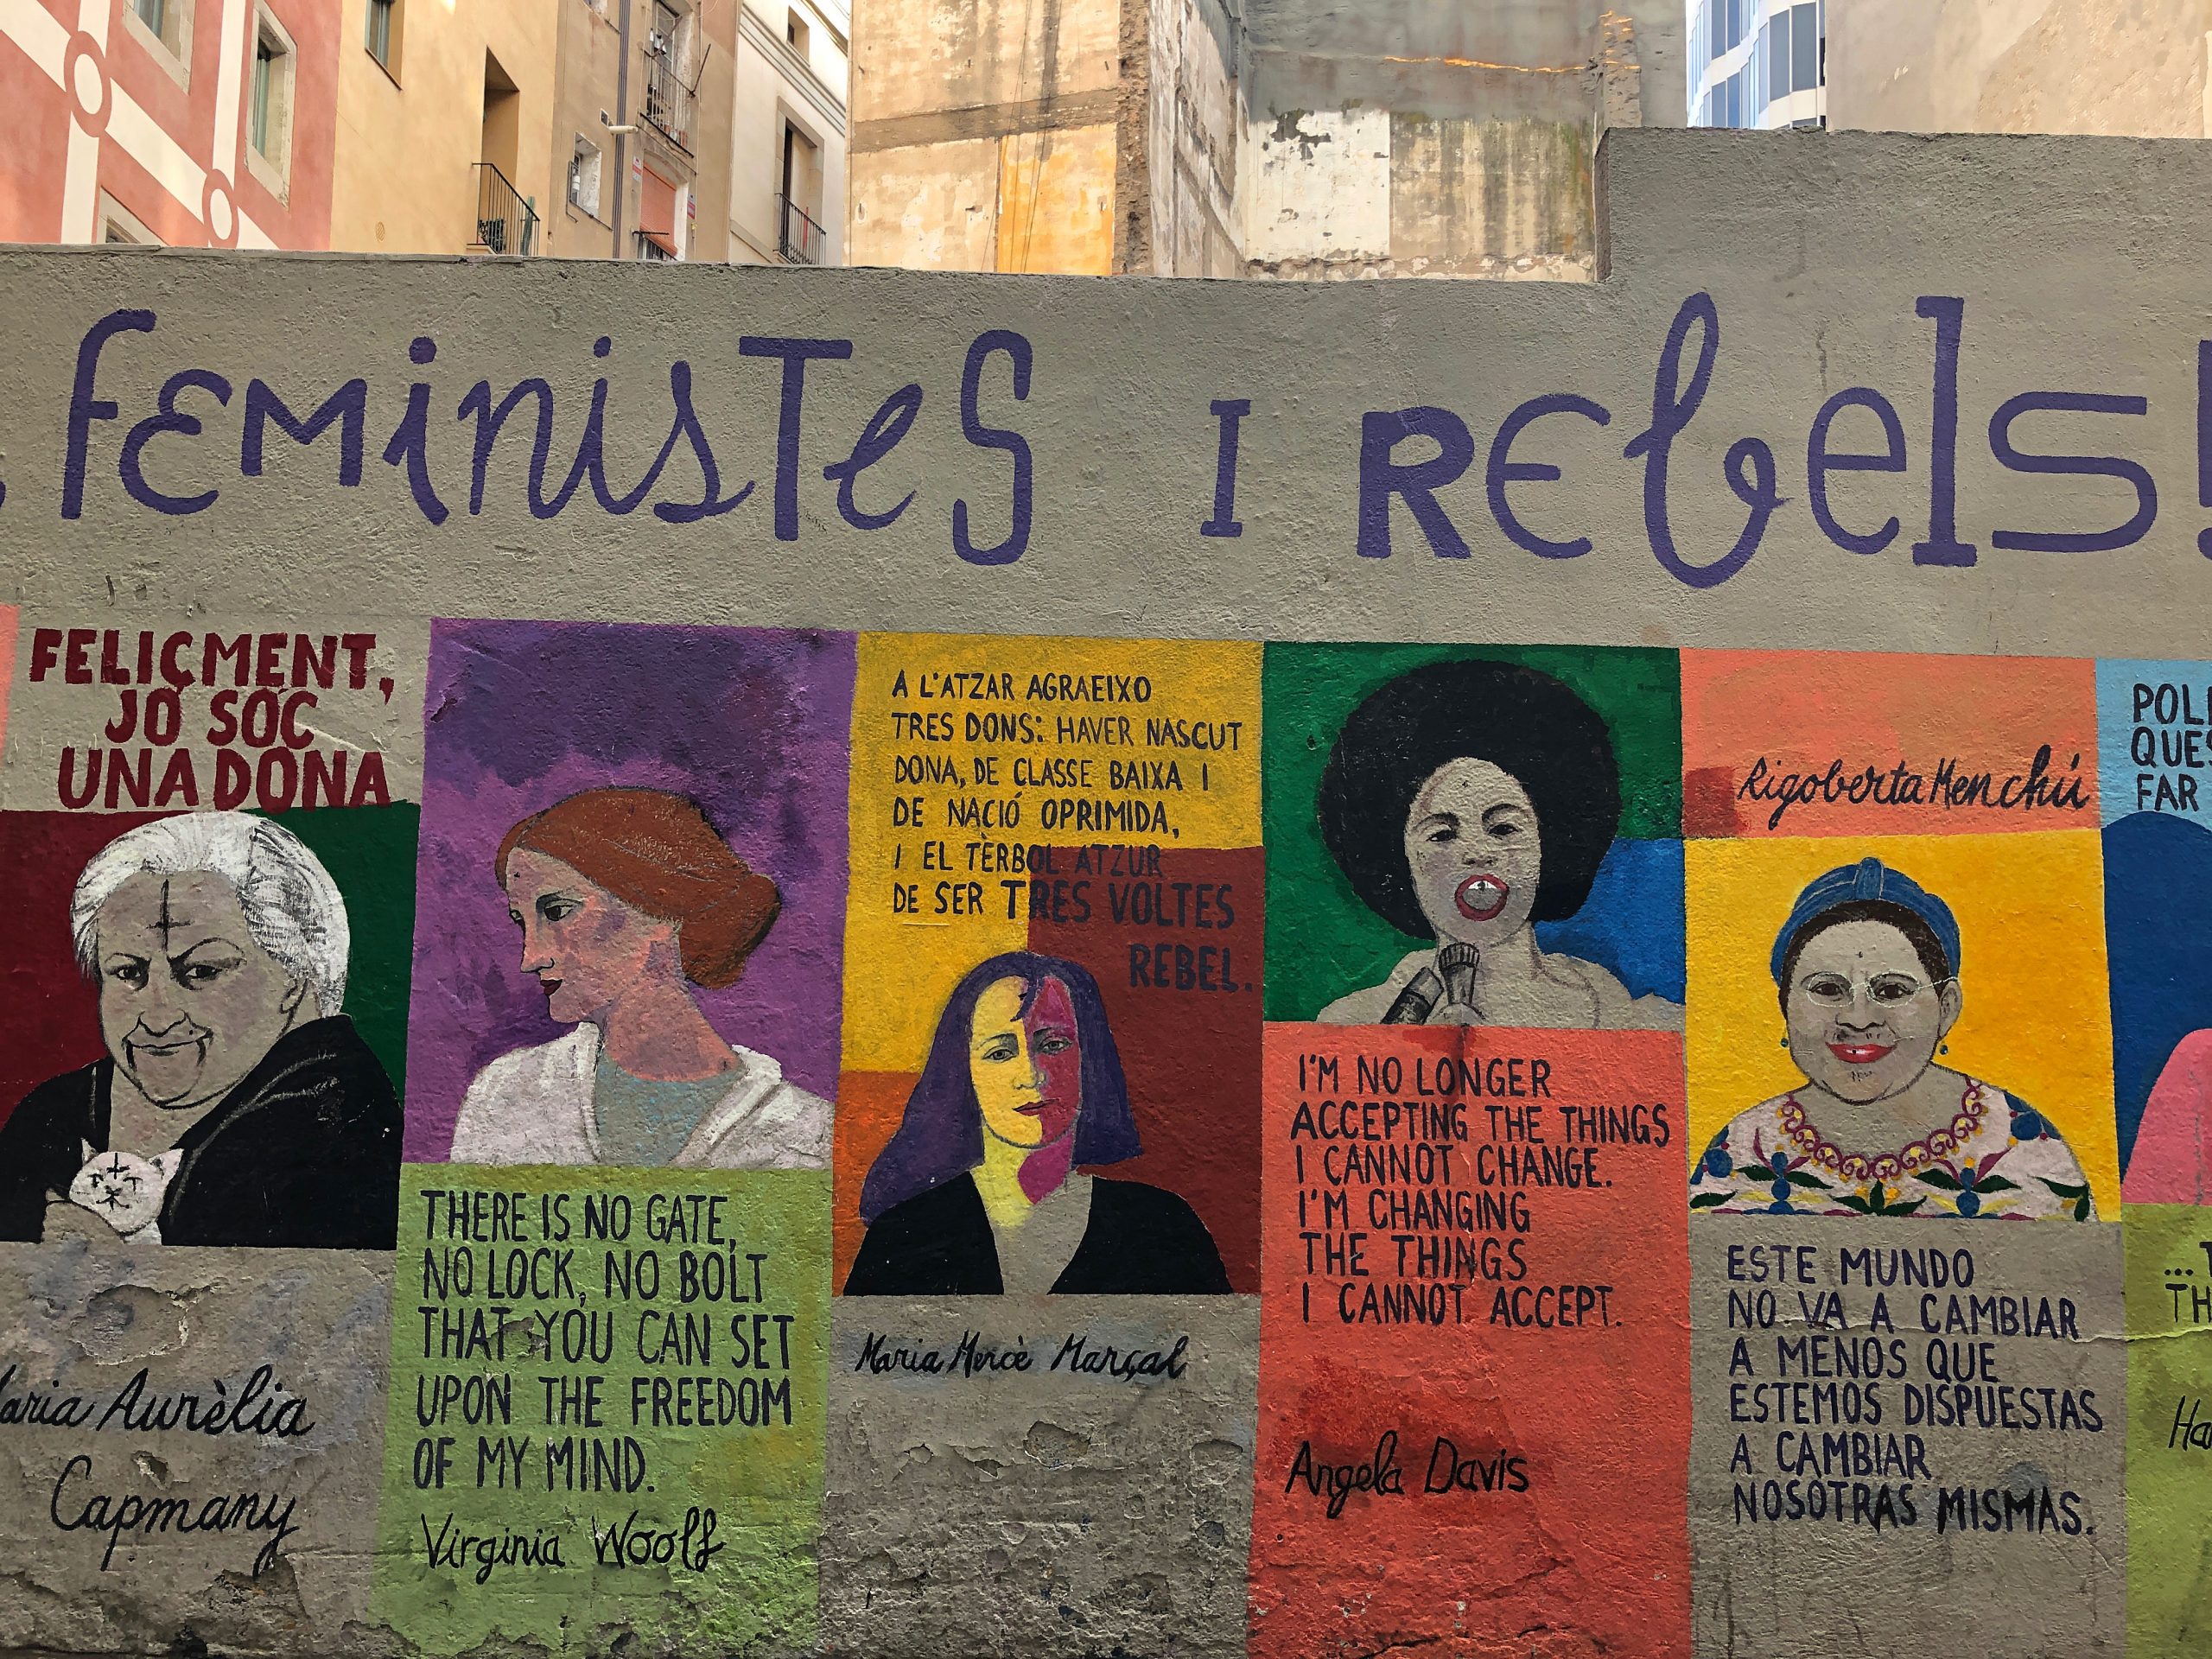 Associações feministas e sindicatos marcham em 12 cidades portuguesas pelos direitos das mulheres